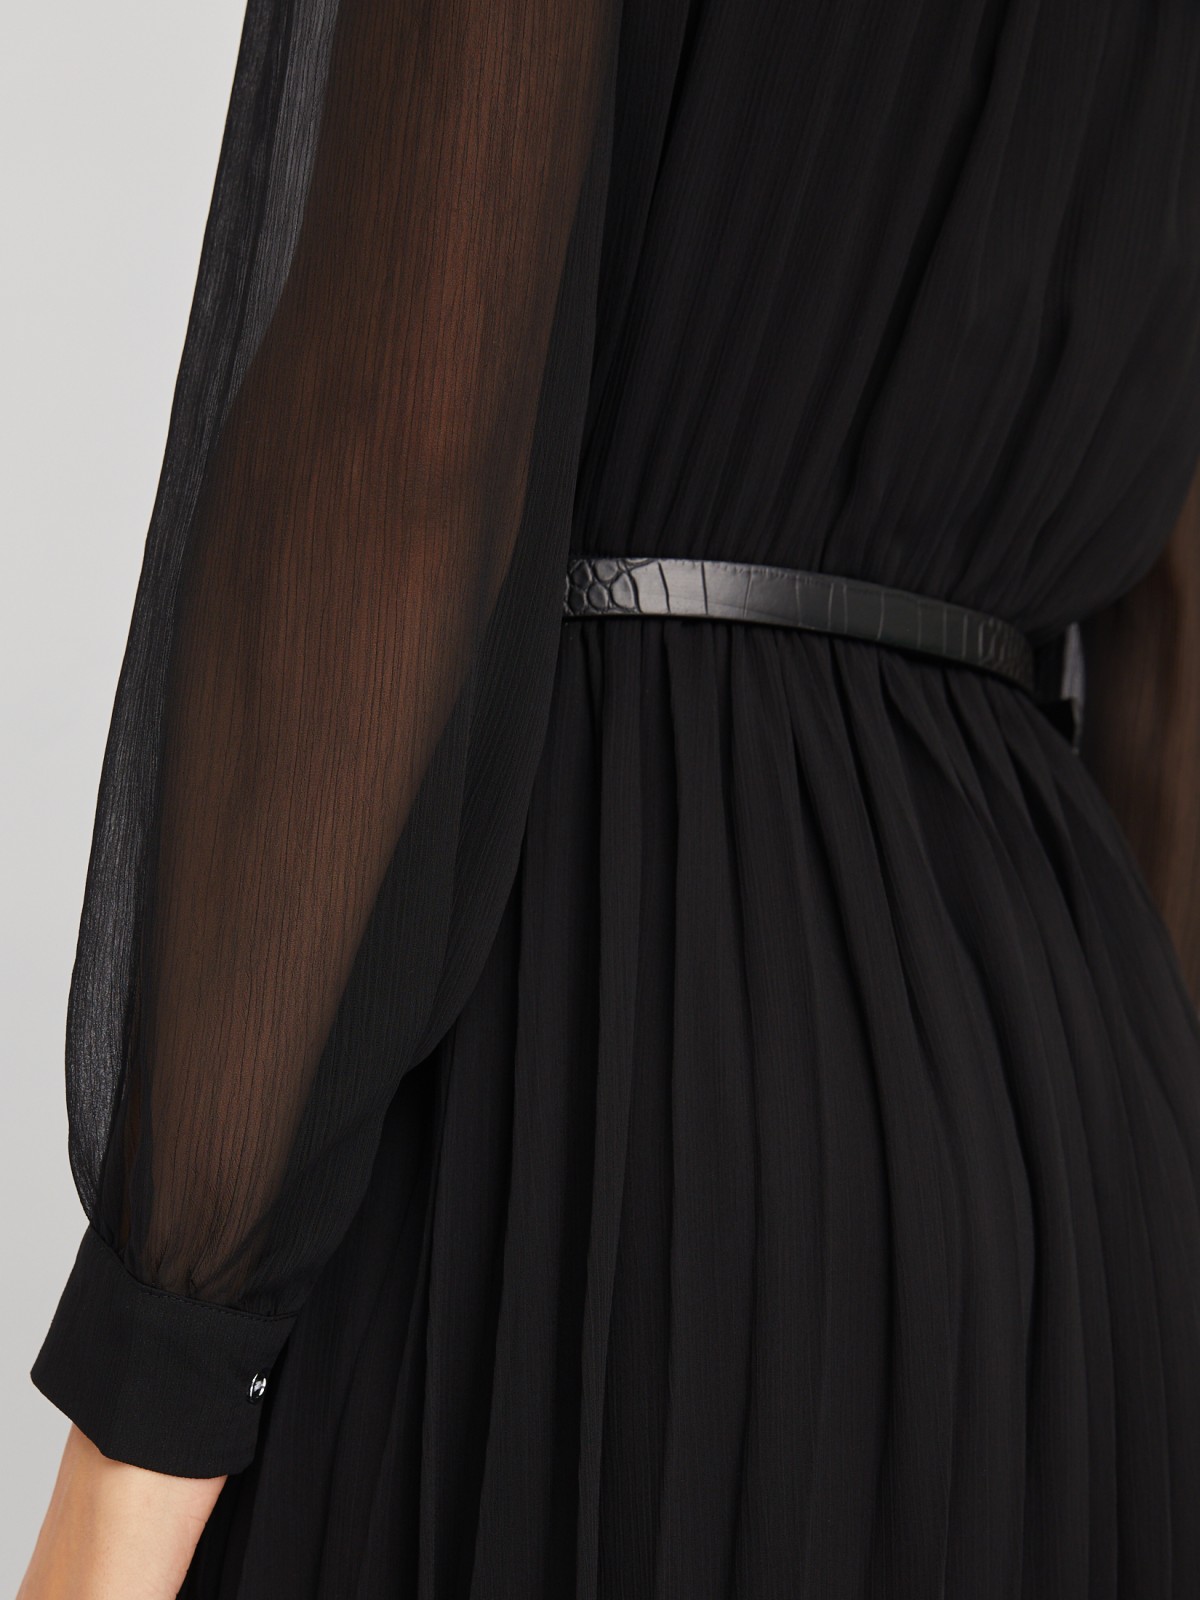 Шифоновое платье-рубашка длины миди с плиссировкой и акцентном на талии